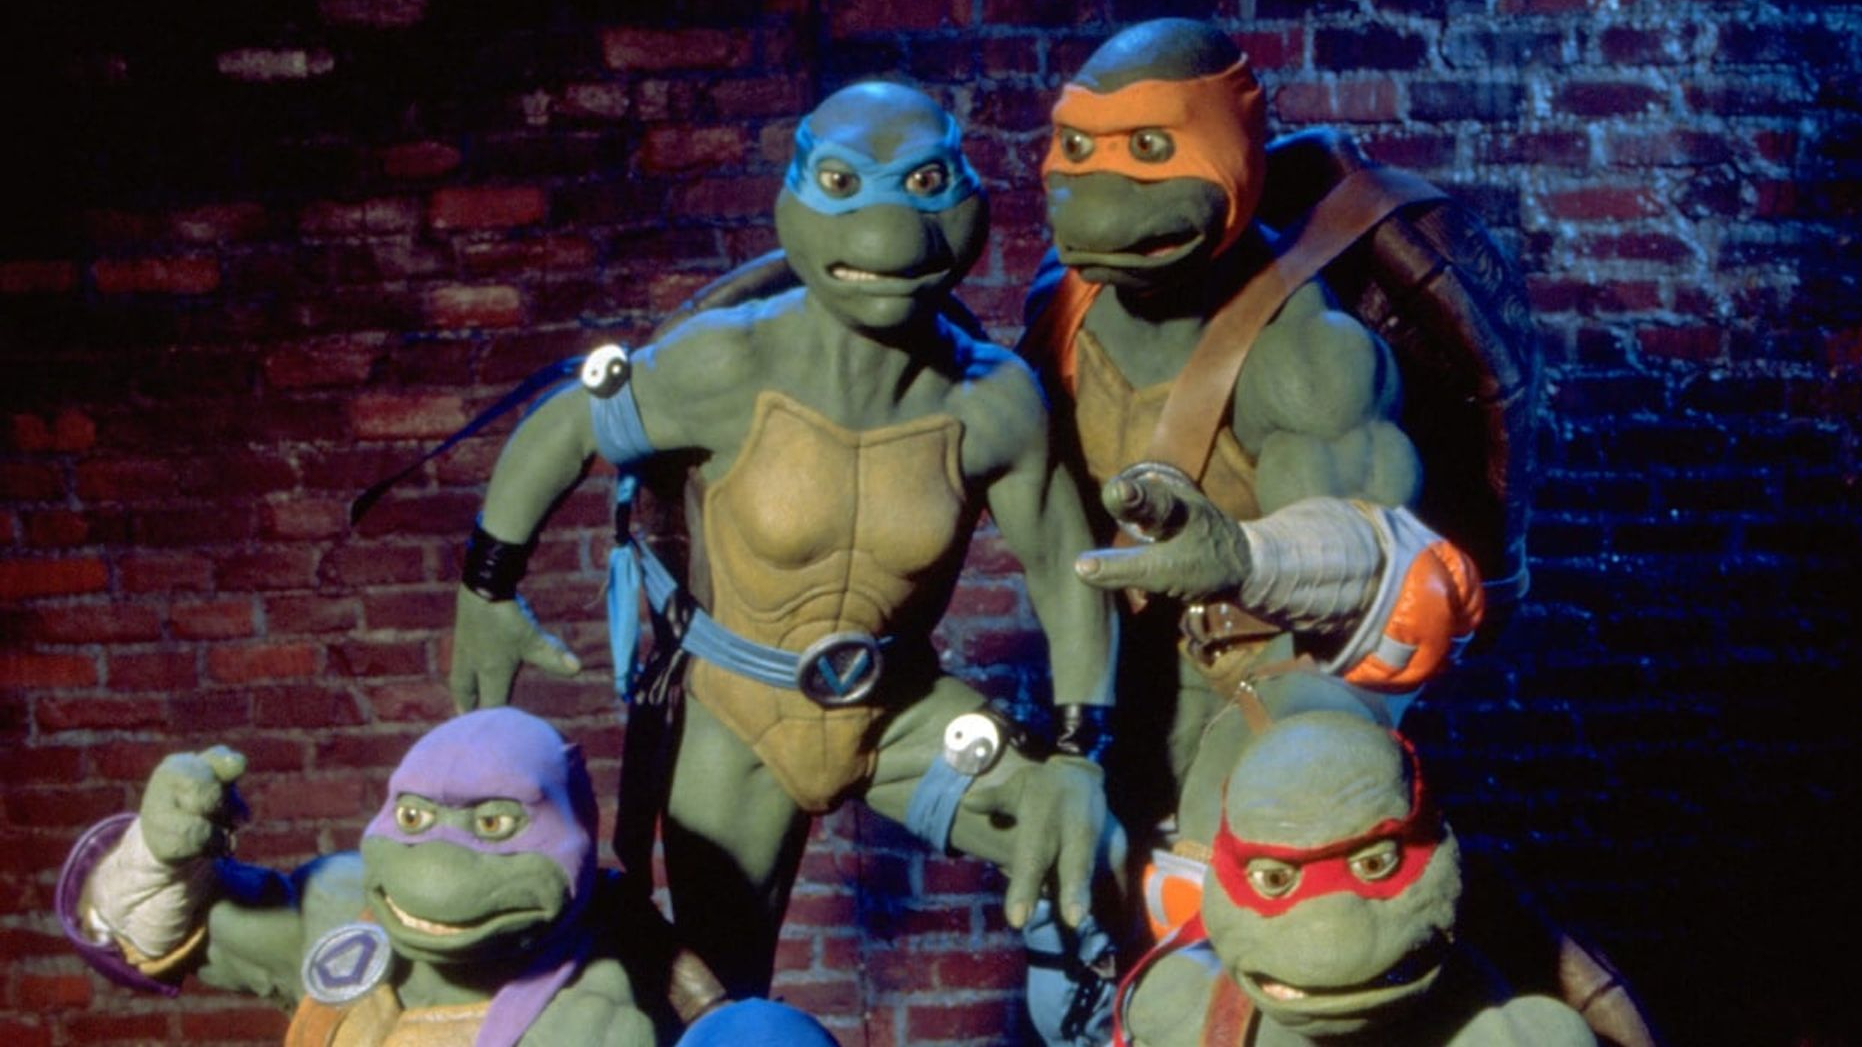 Seth Rogen Rebooting Teenage Mutant Ninja Turtles, Release Date Revealed